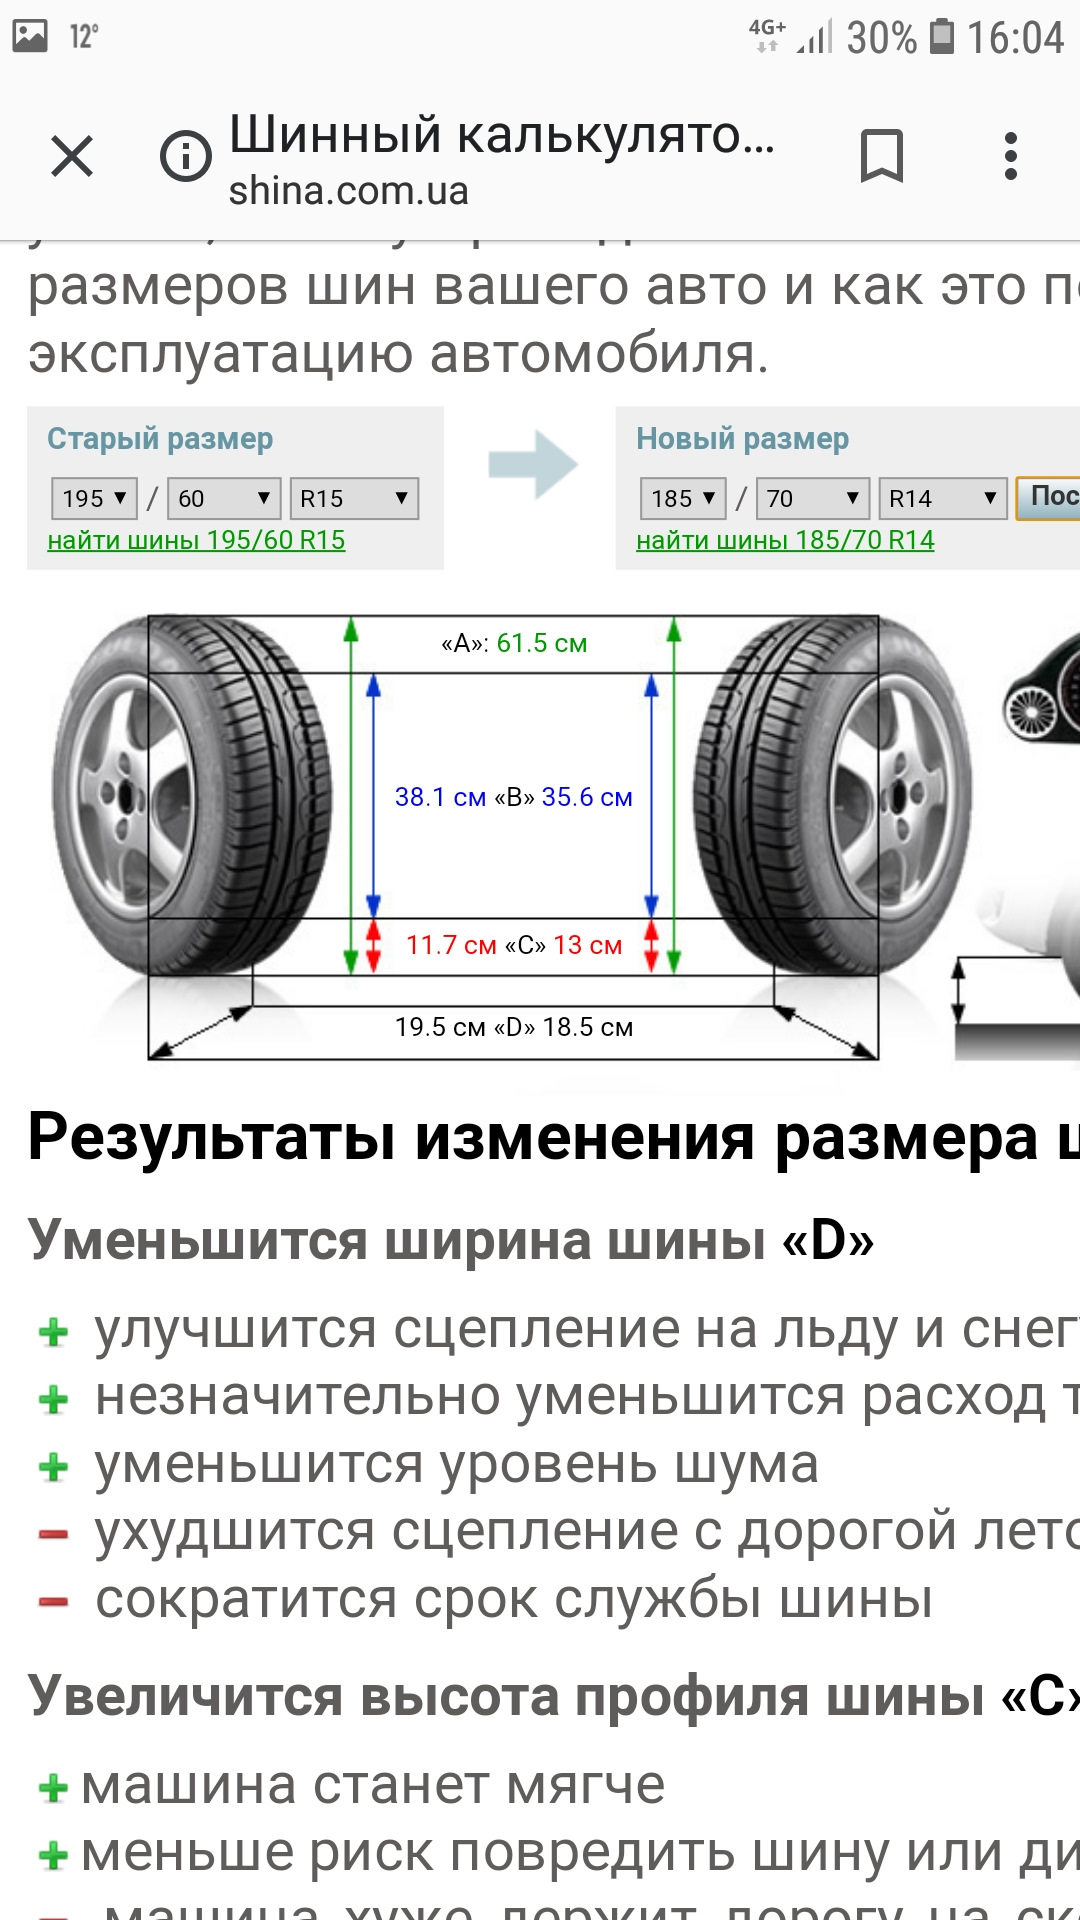 Разные колеса на осях можно ли. Ширина профиля на шинах 185/70 r14. Как узнать какого диаметра шины автомобильные. Ширина покрышки с профилем 245. Как определить размер колес авто.